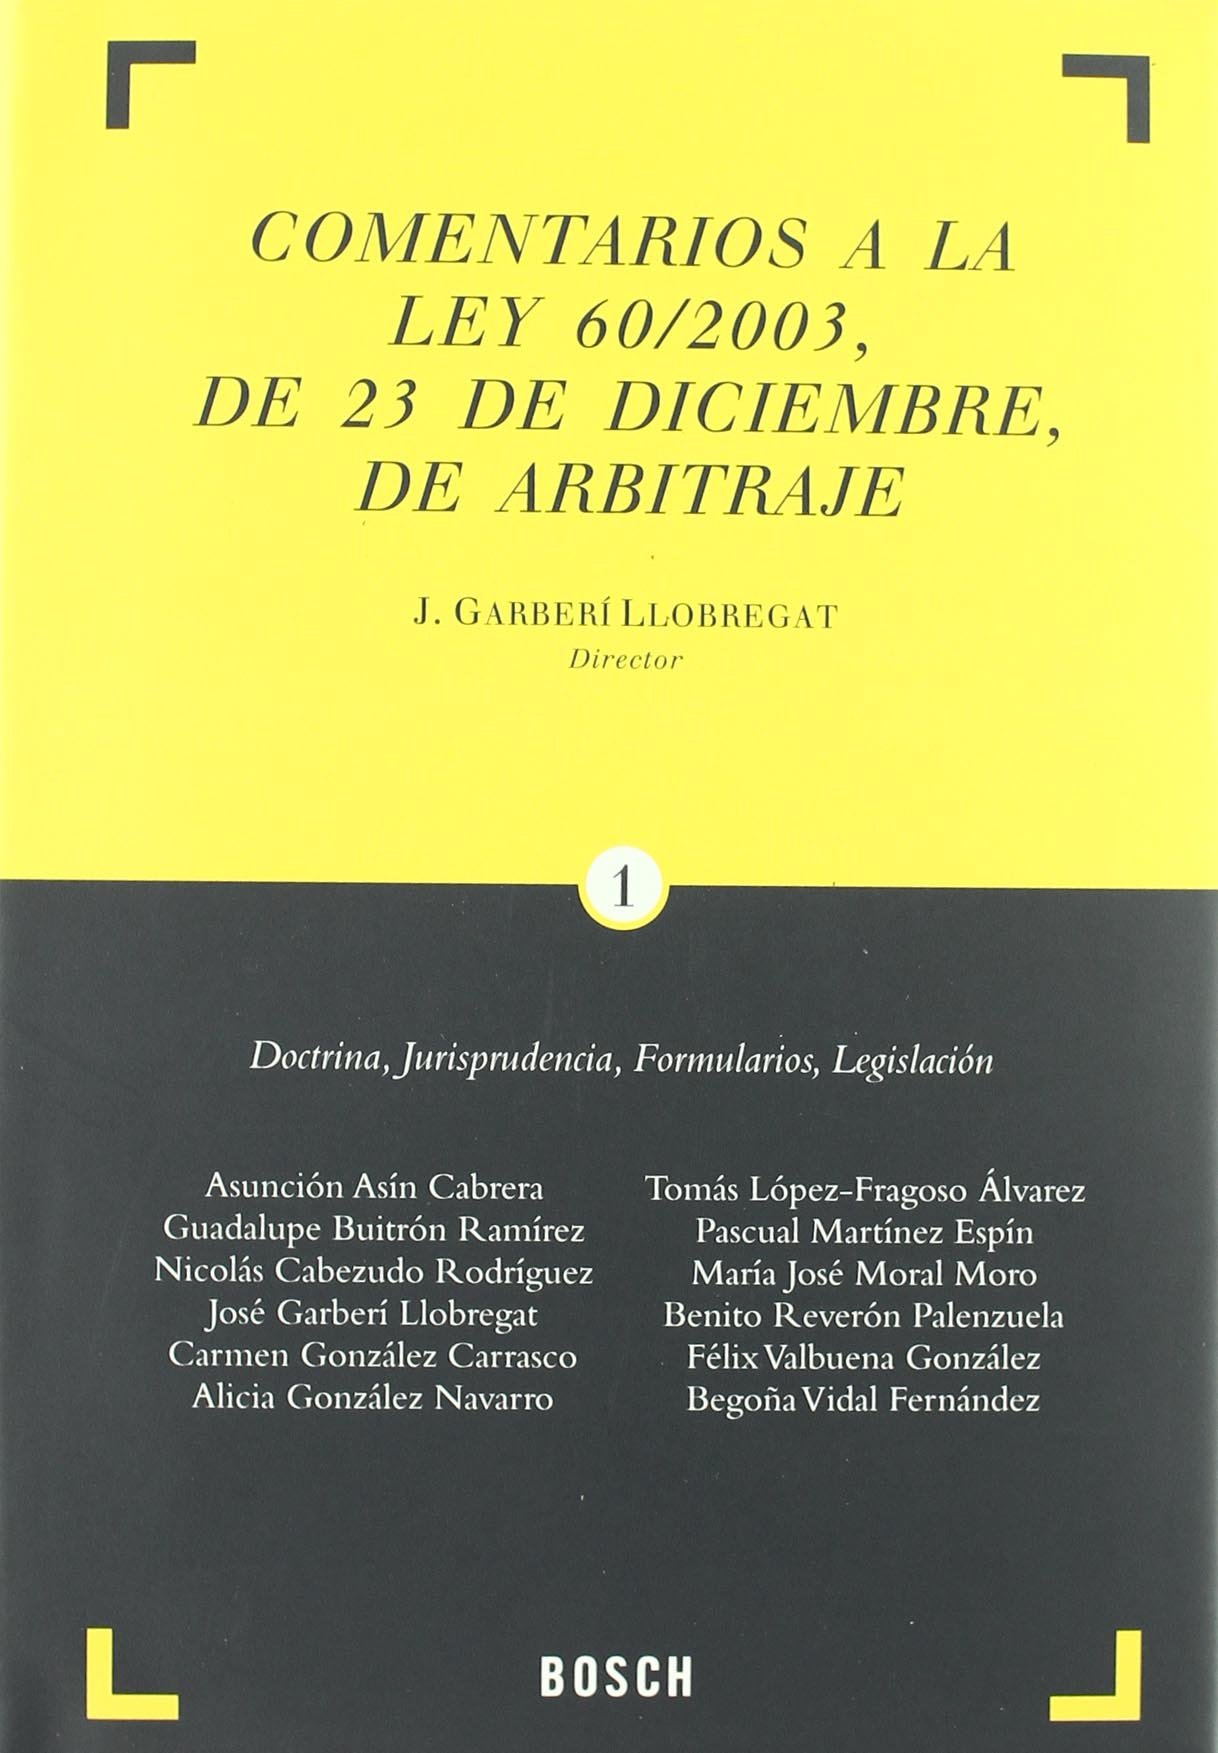 Comentarios a la Ley 60/2003, de 23 de diciembre, de arbitraje